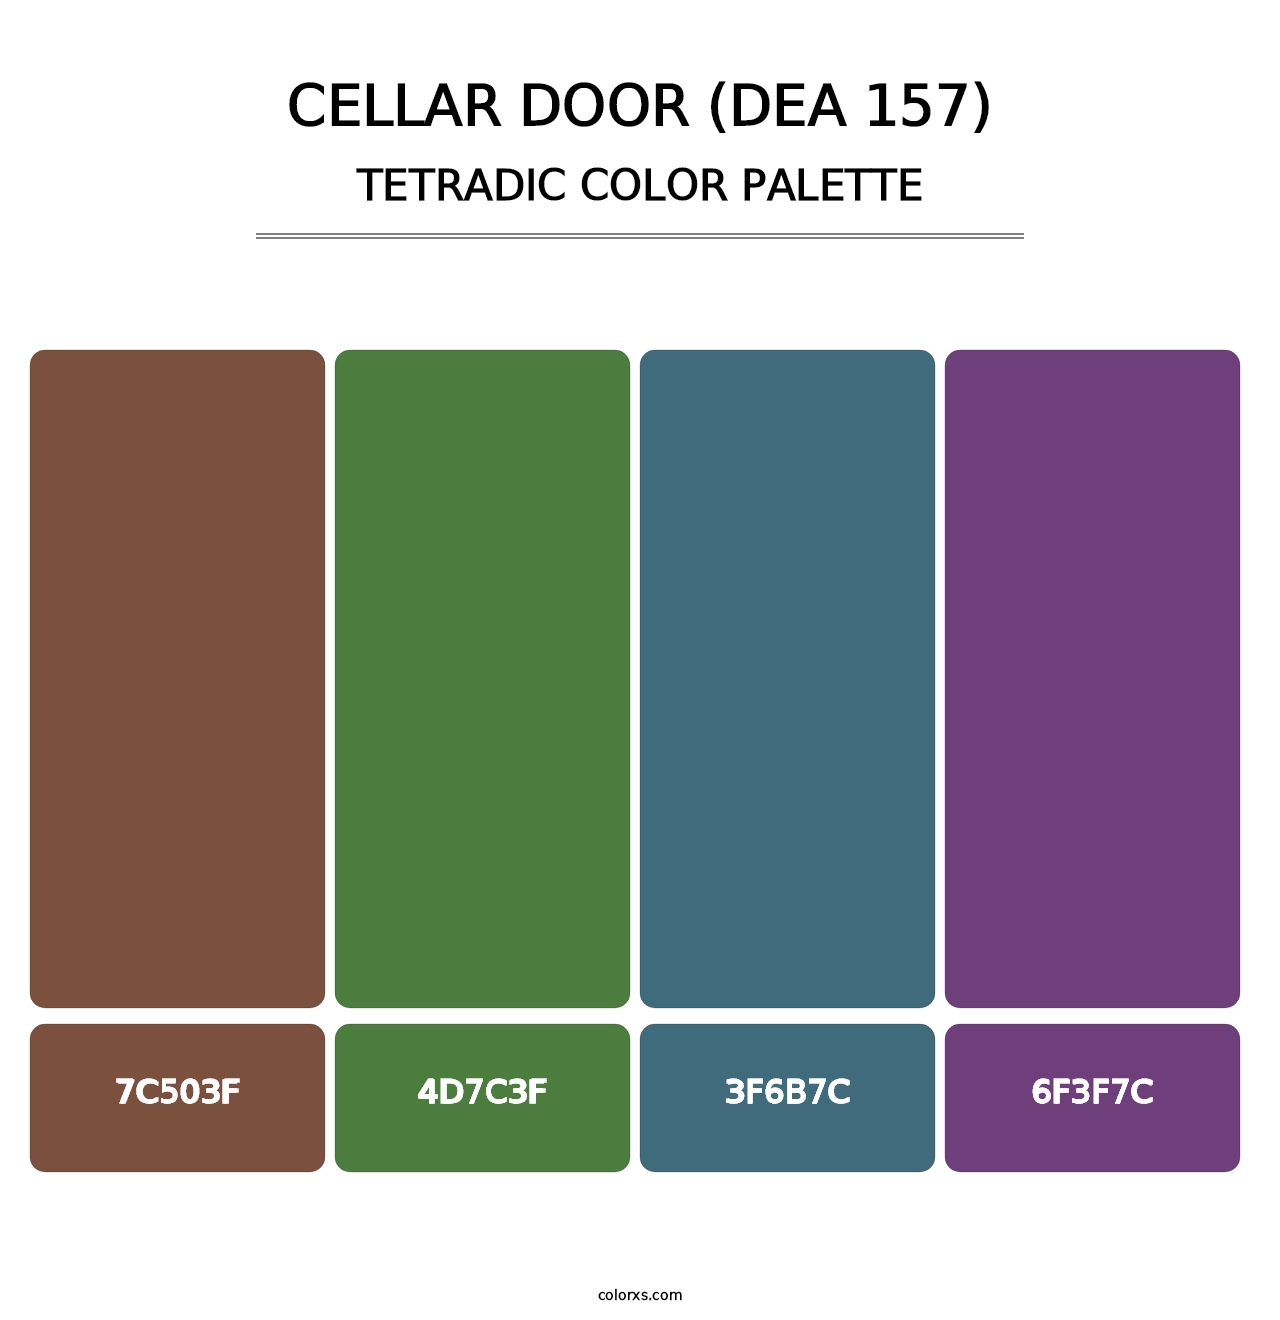 Cellar Door (DEA 157) - Tetradic Color Palette